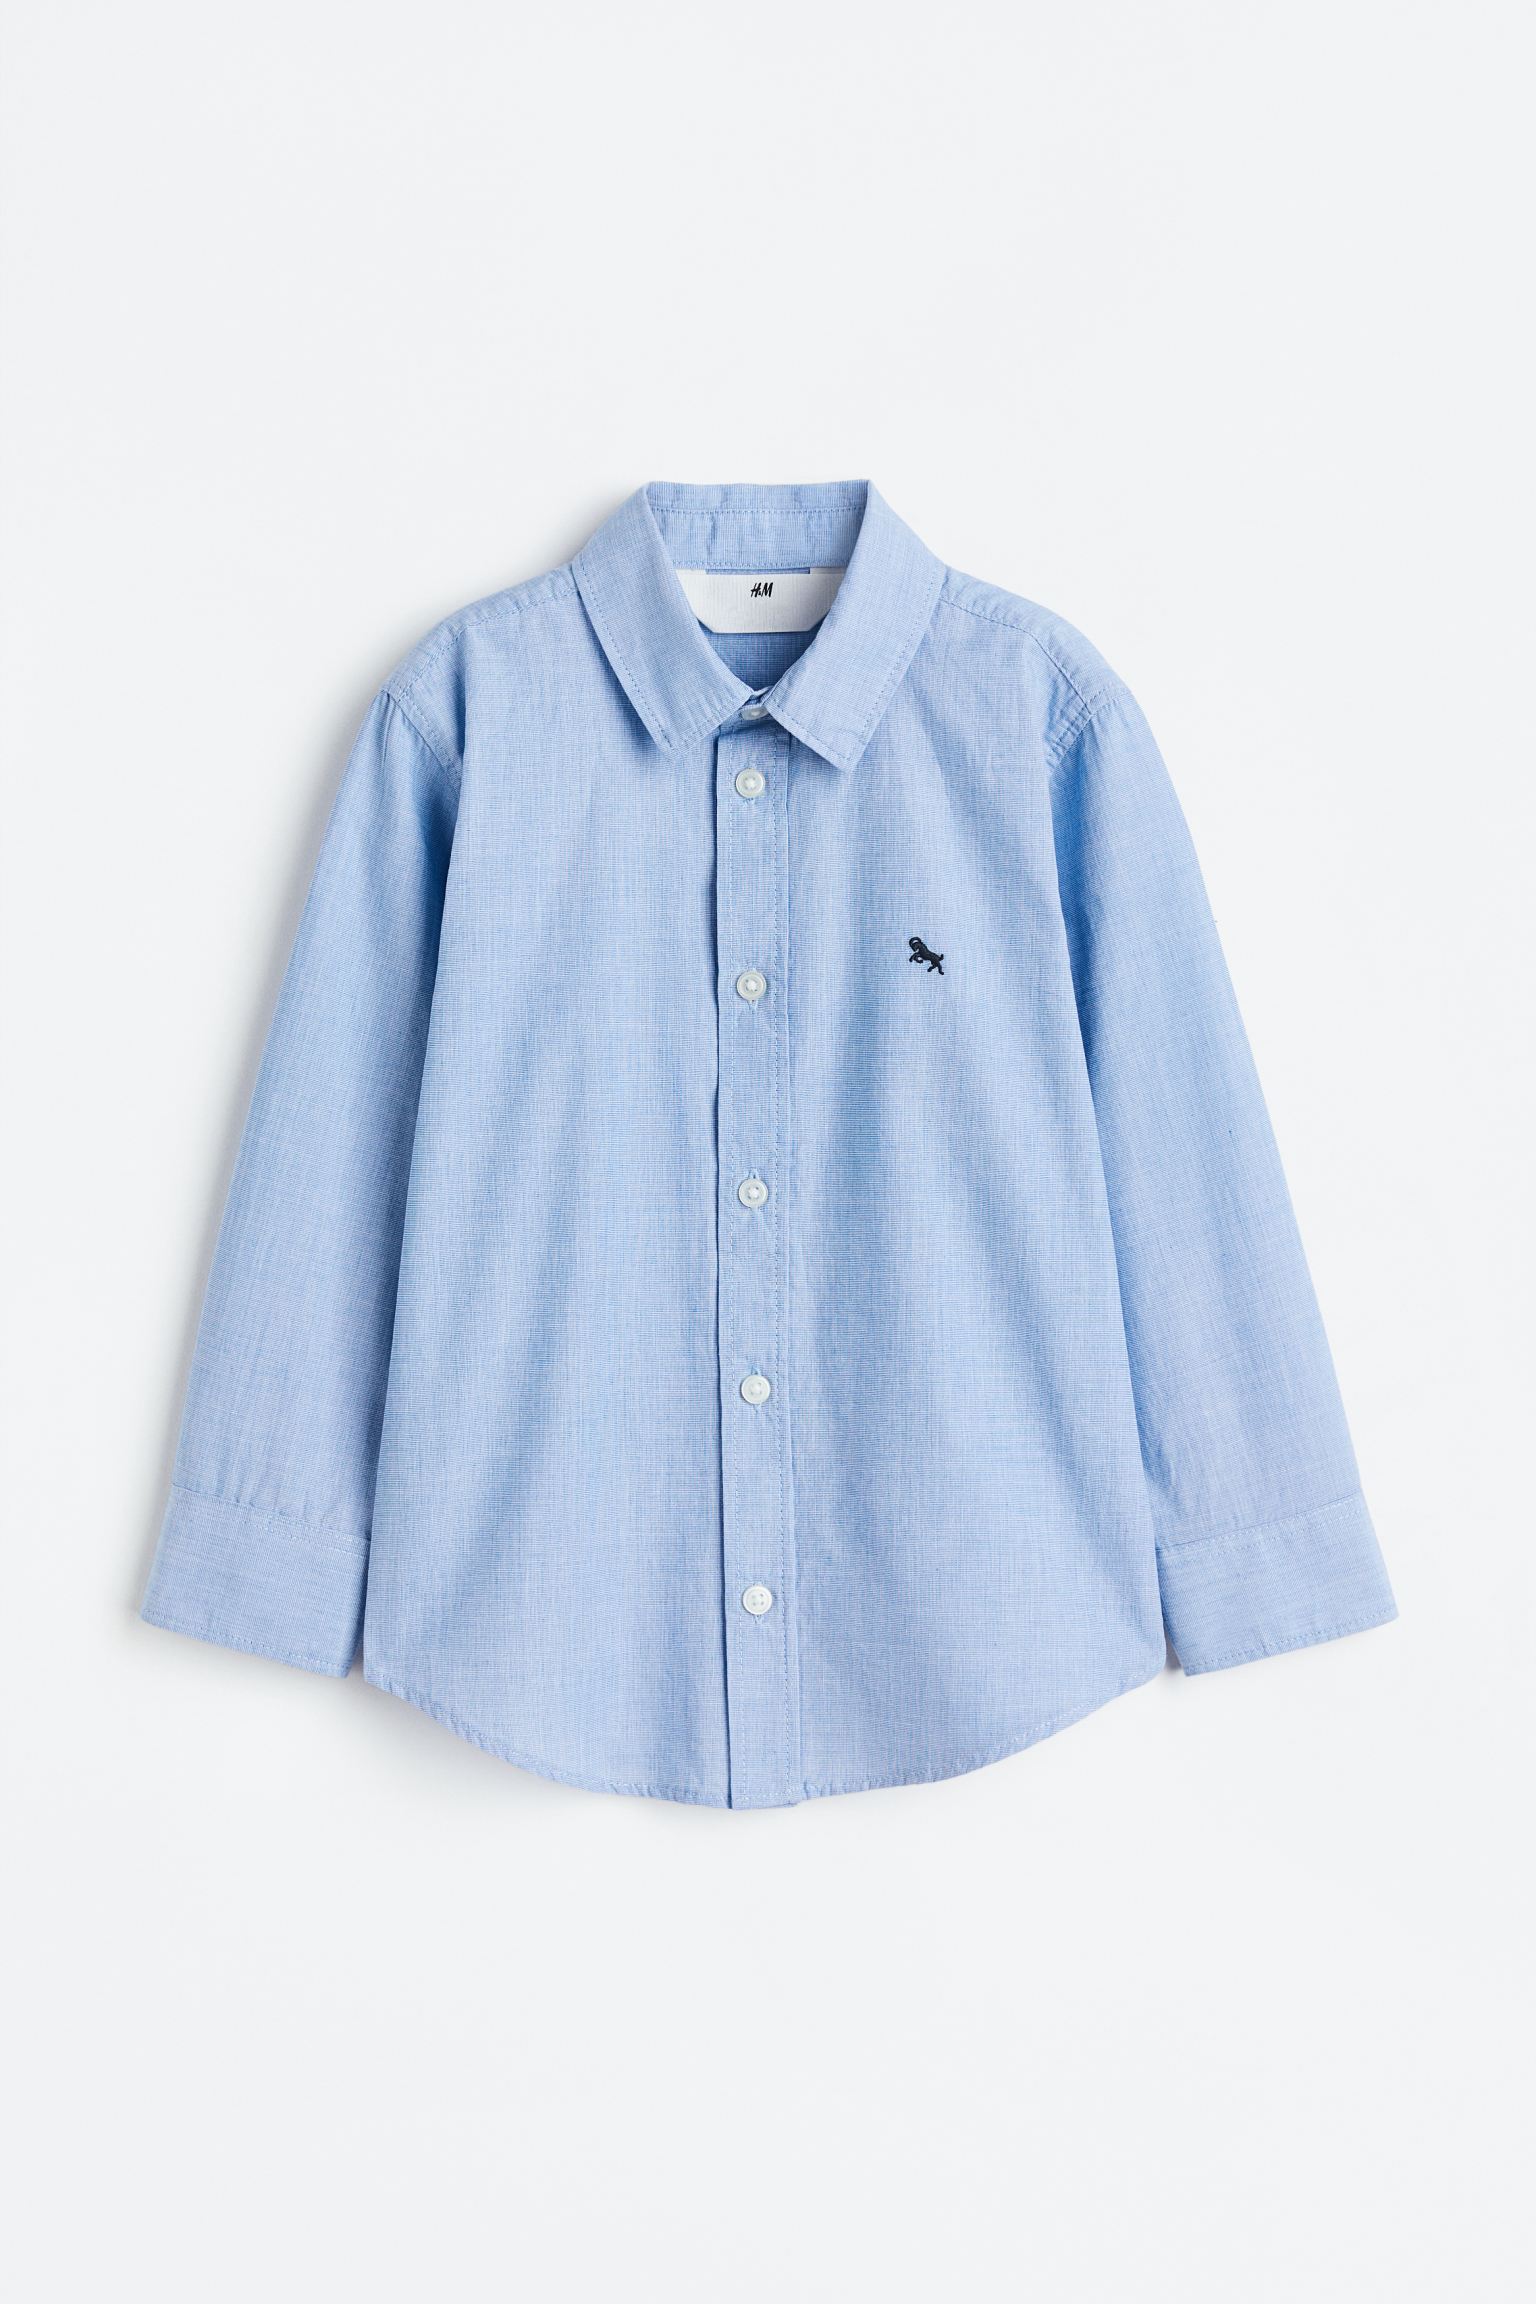 Хлопчатобумажная рубашка H&M, светло-синий габардиновая рубашка рубашка h